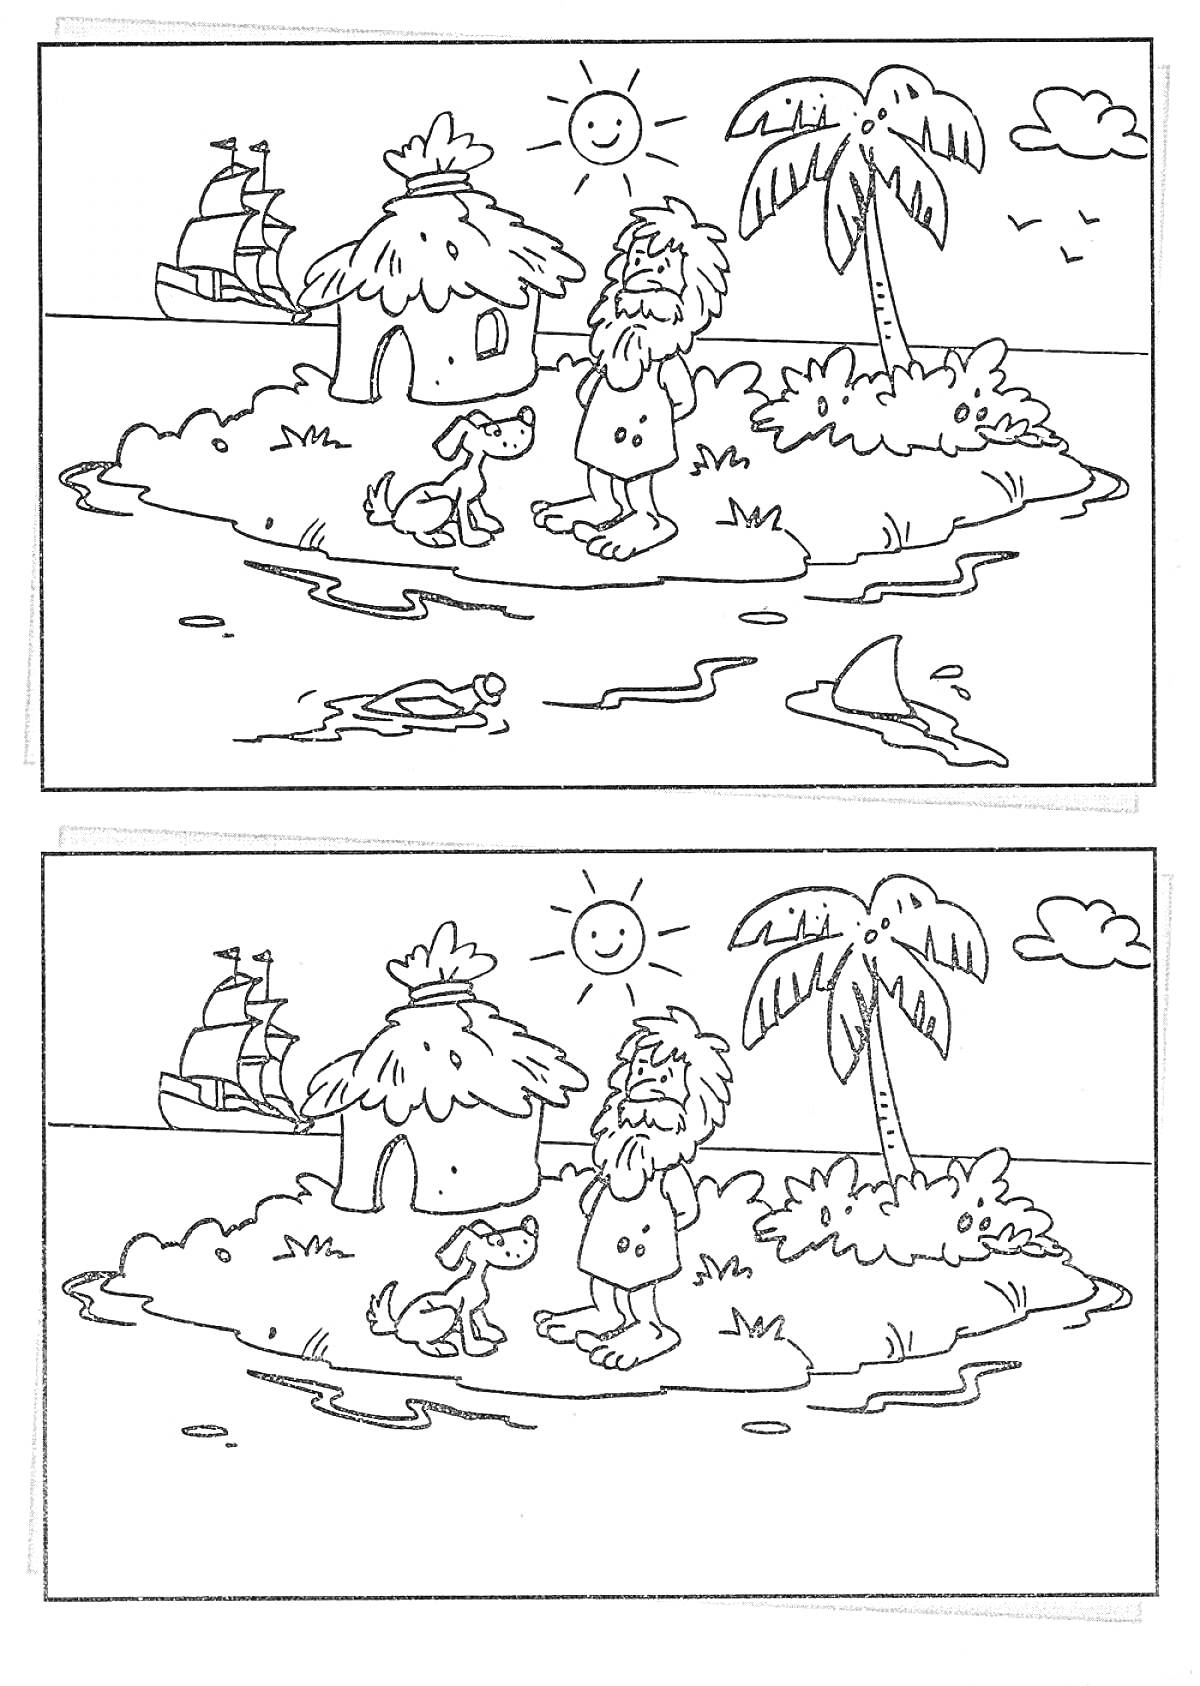 РаскраскаНайди отличия: Робинзон с собакой на острове, пальма, домик, корабль, солнце, облако, вода, берег.